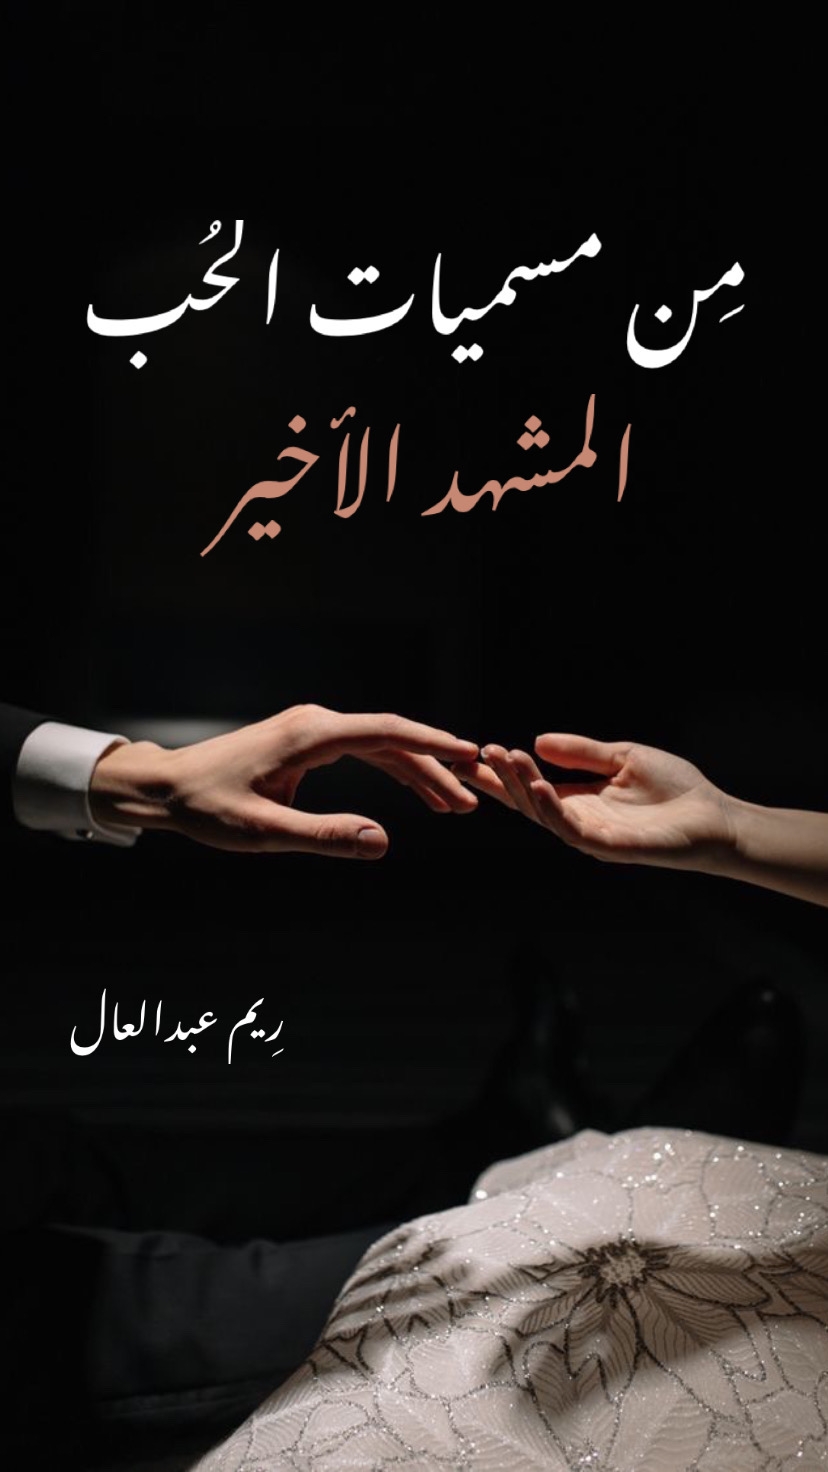 المشهد الاخير من سلسلة من مسميات الحب بقلم ريم عبدالعال